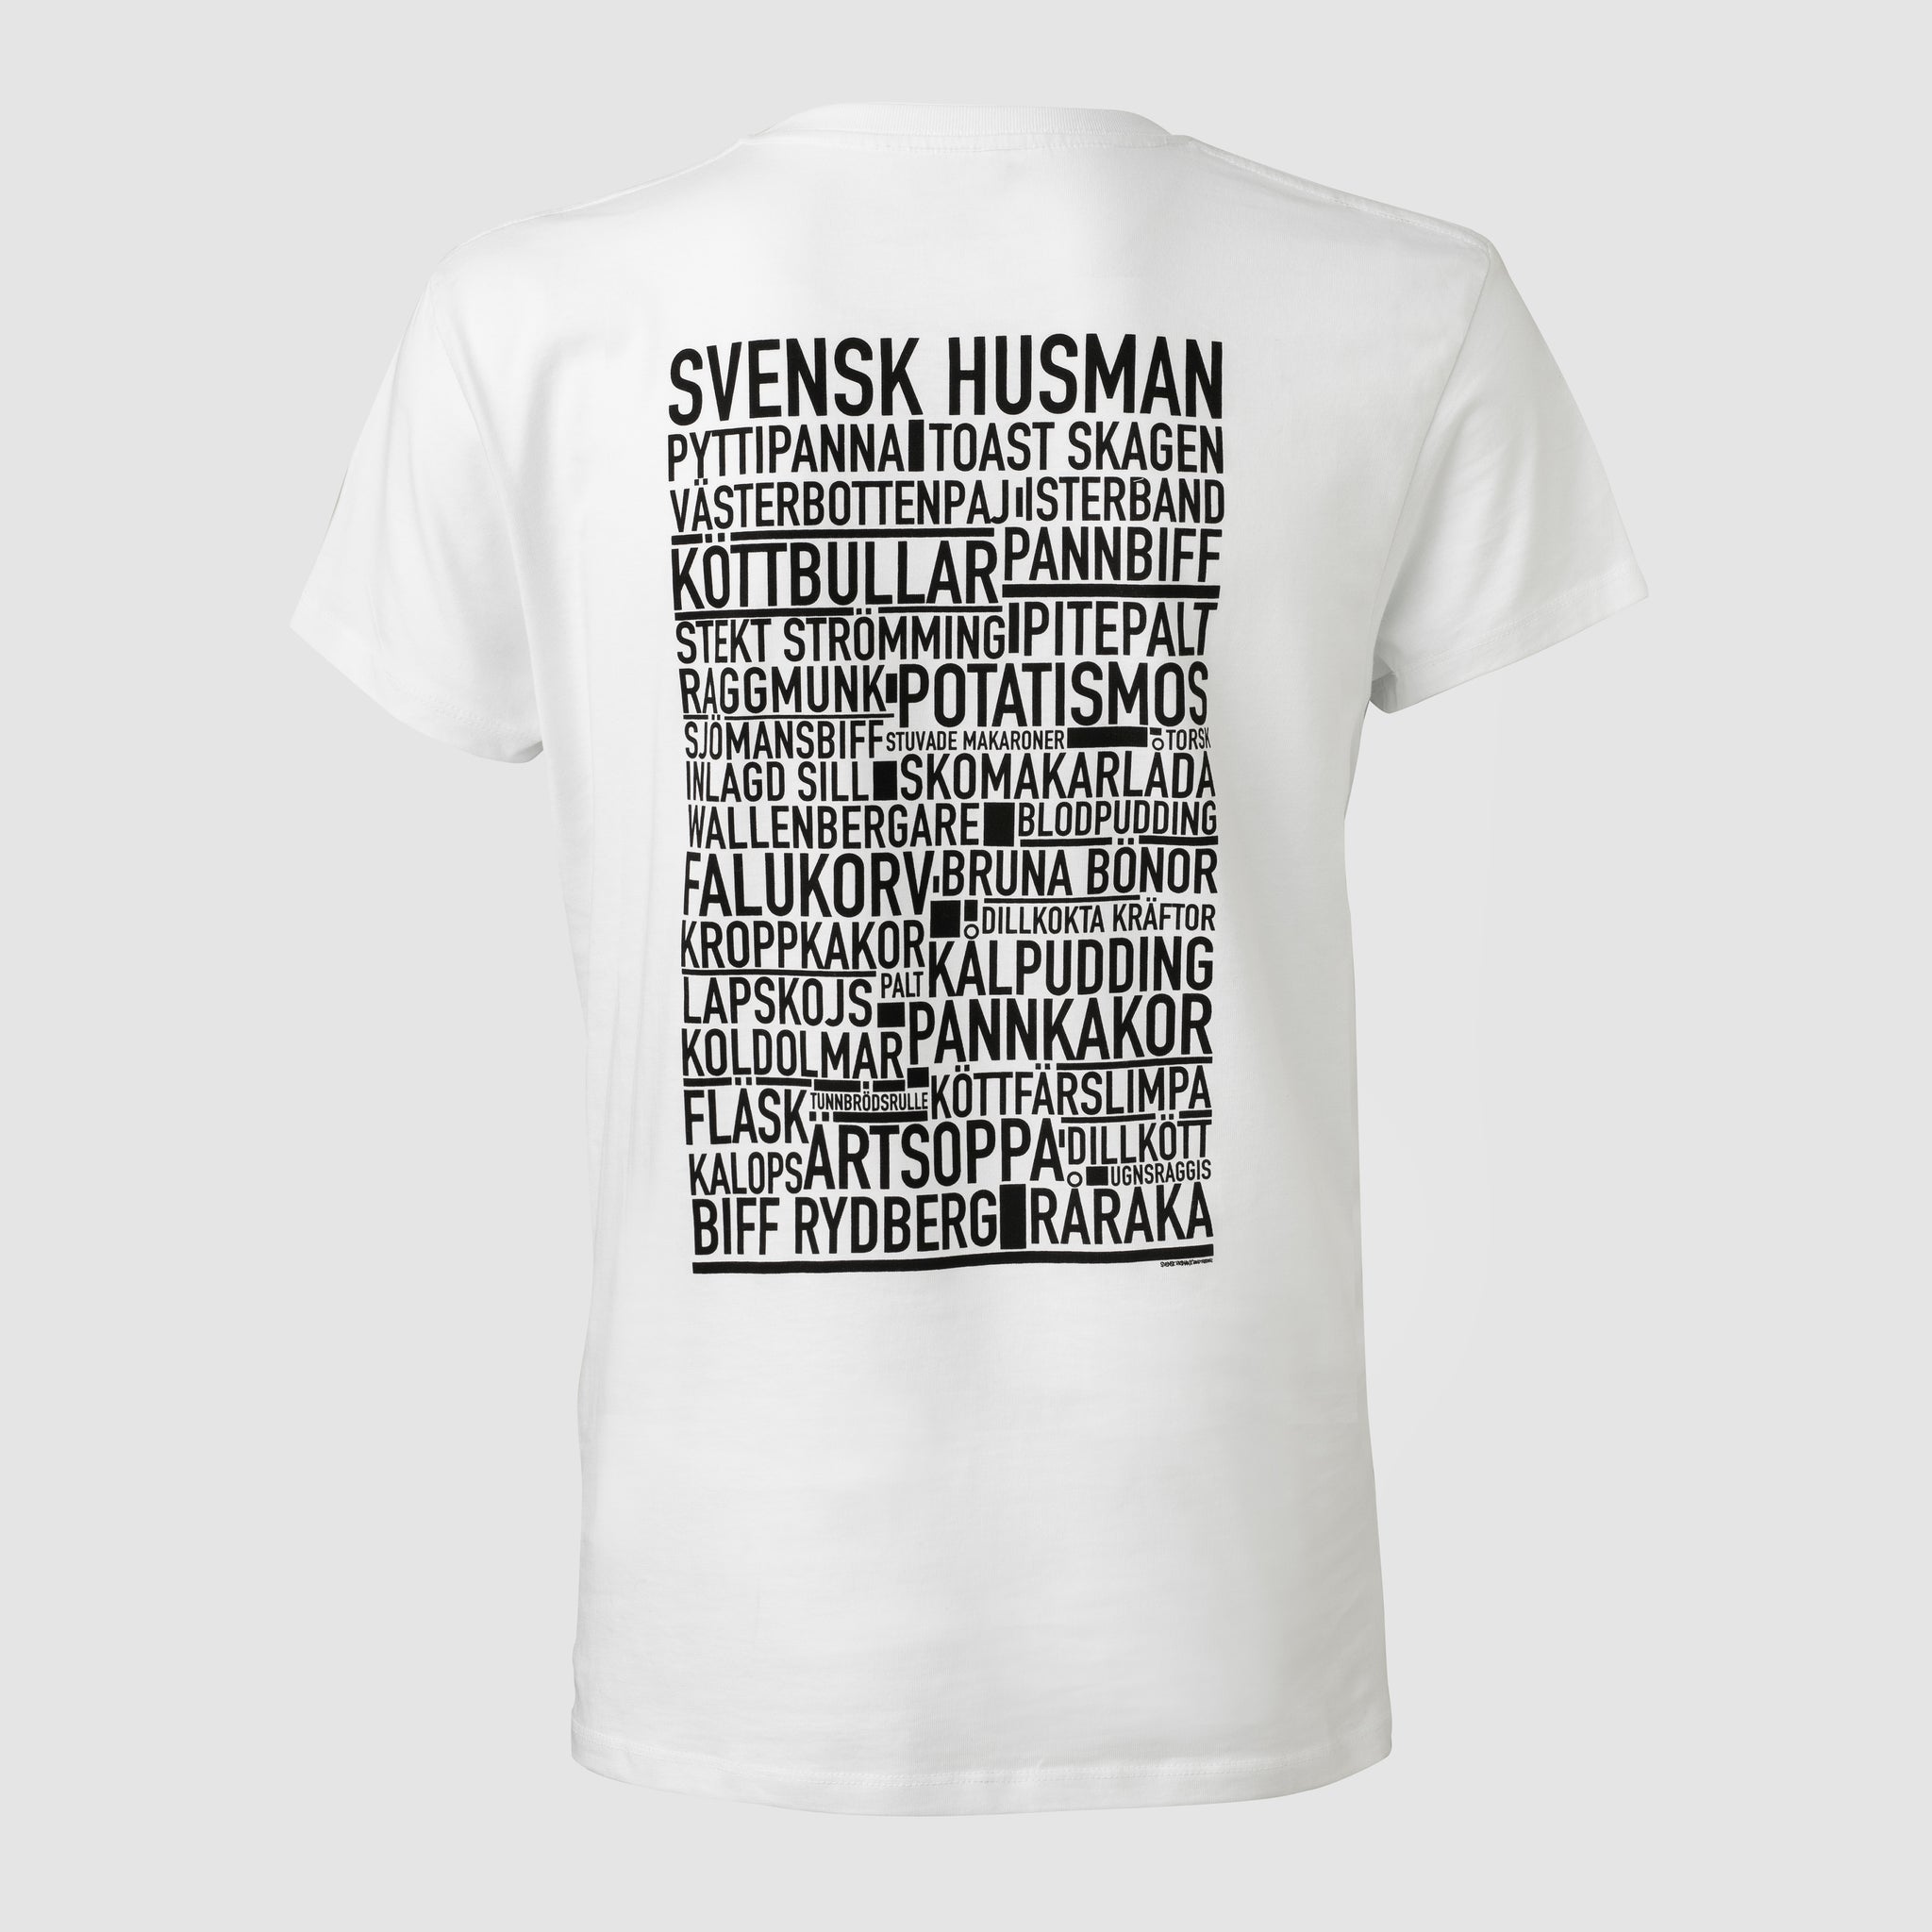 Swedish Husman - t-shirt